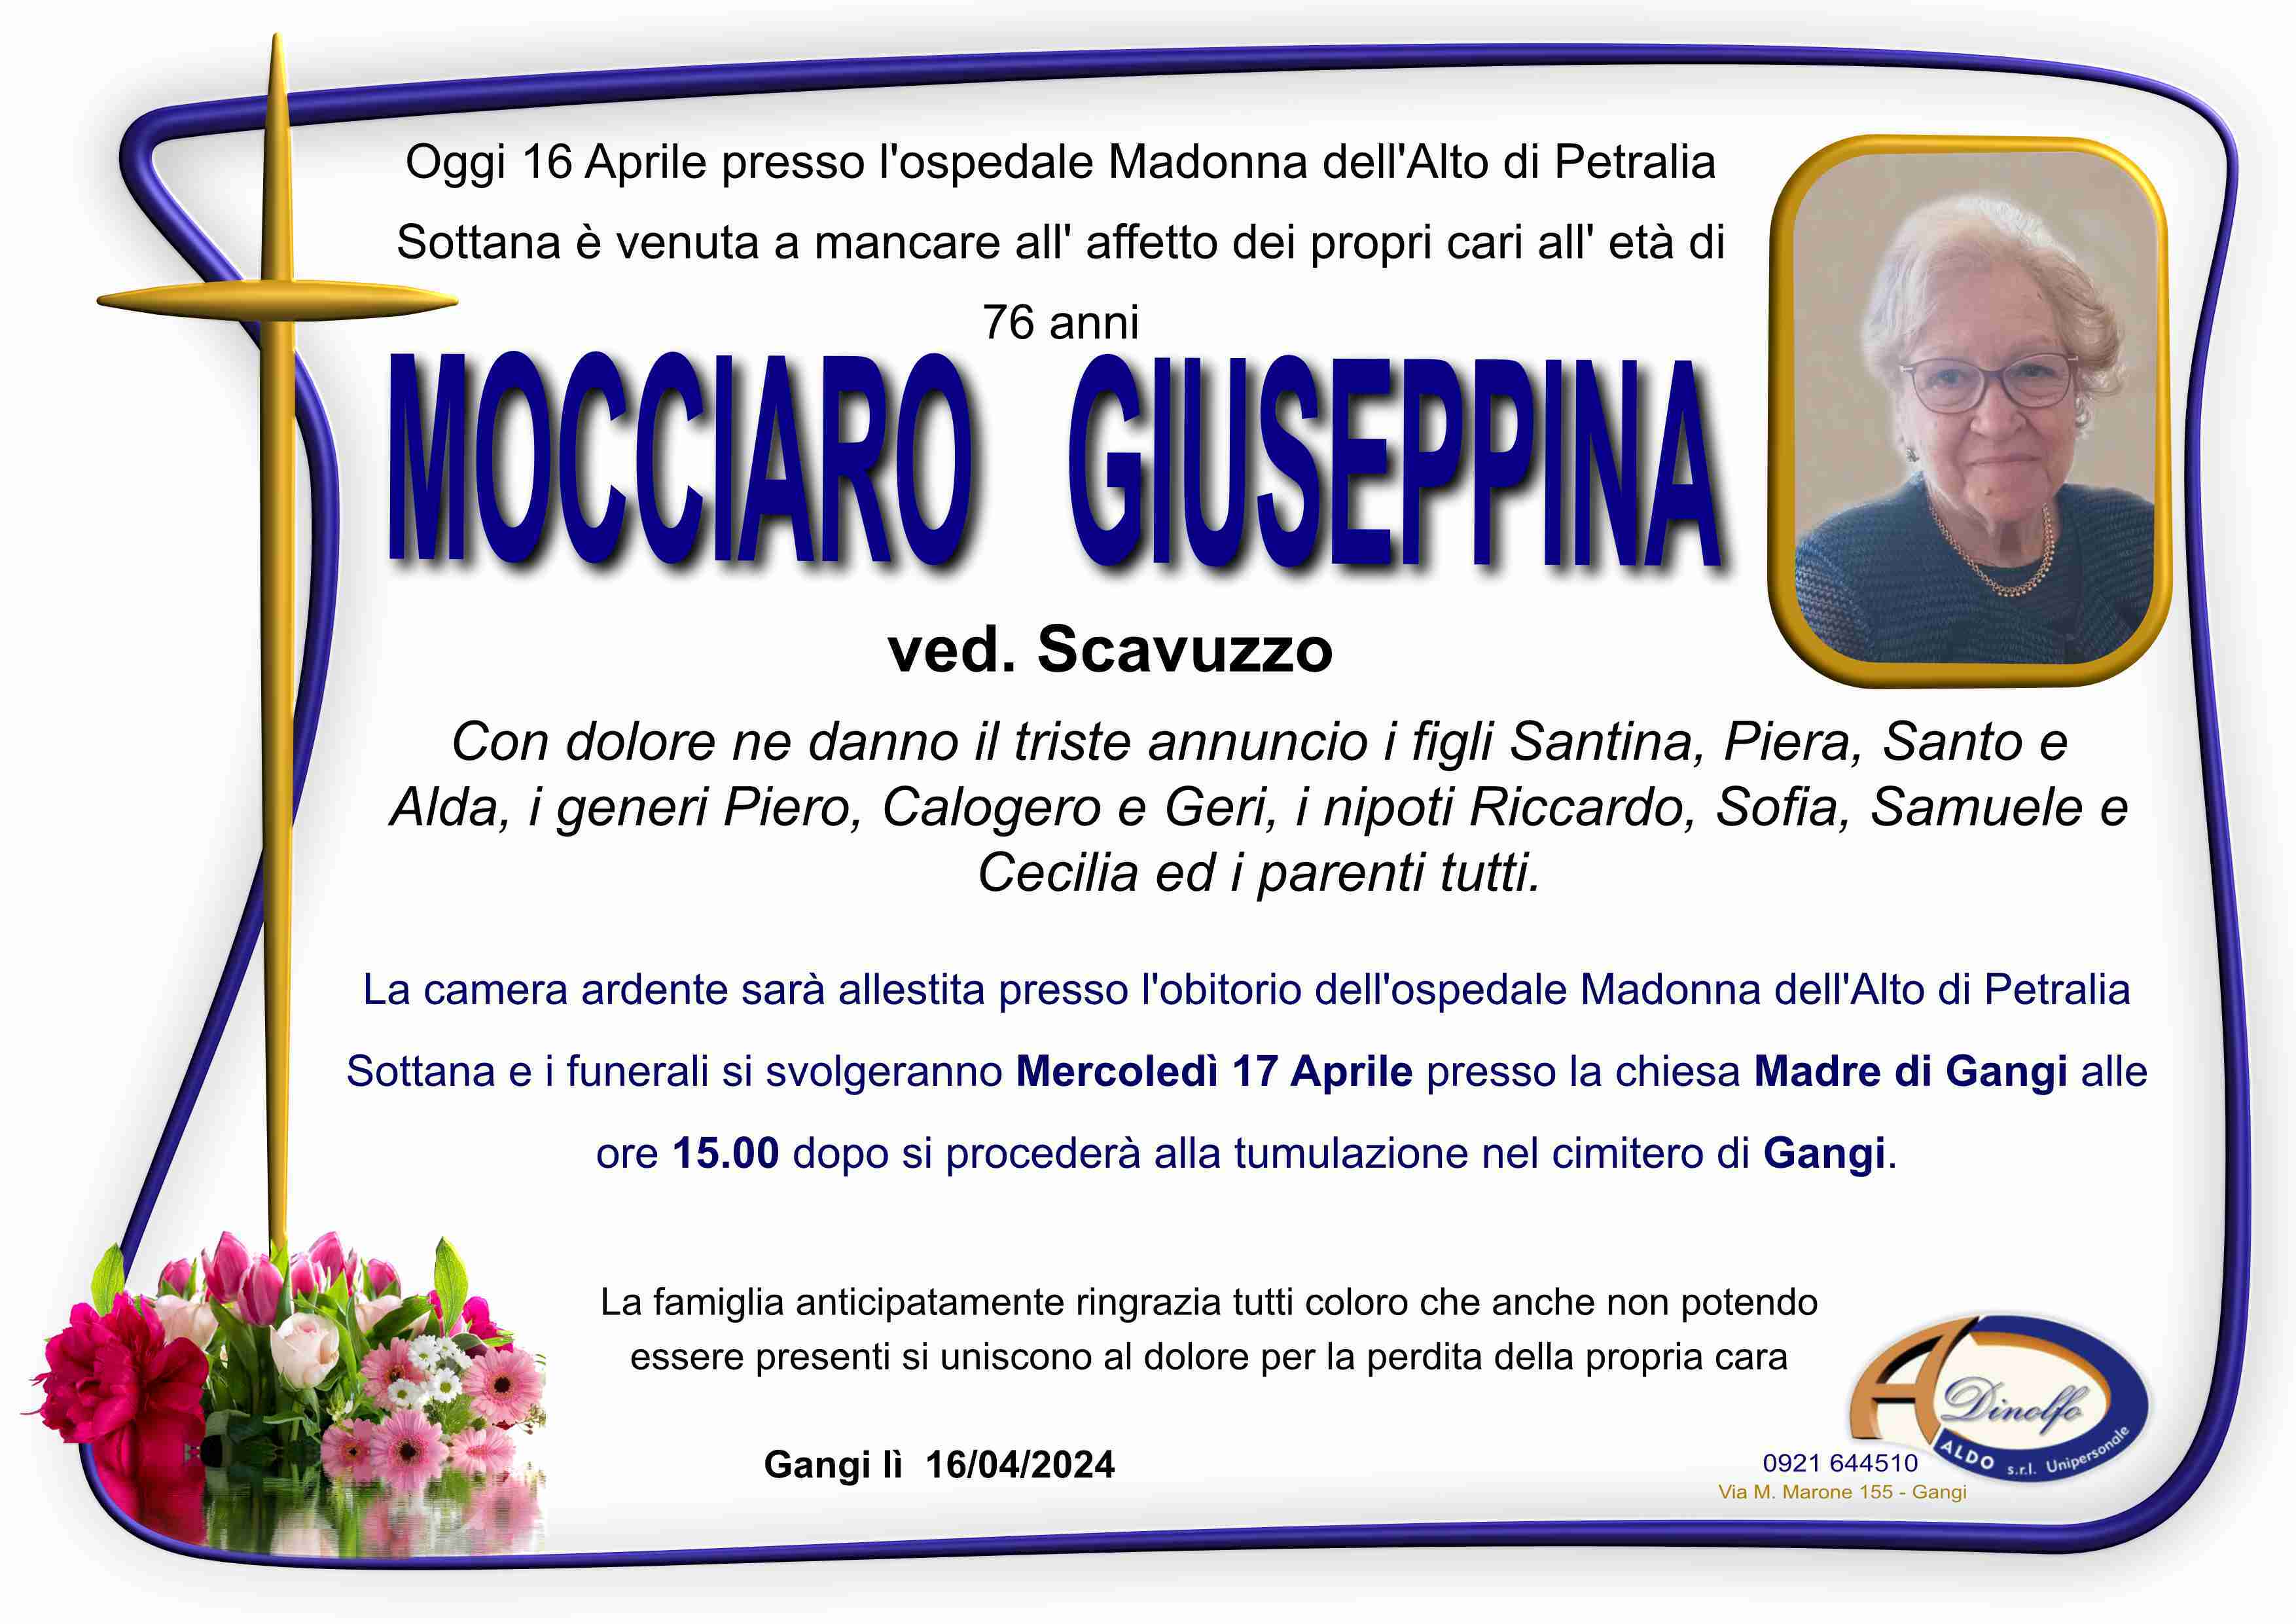 Giuseppina Mocciaro